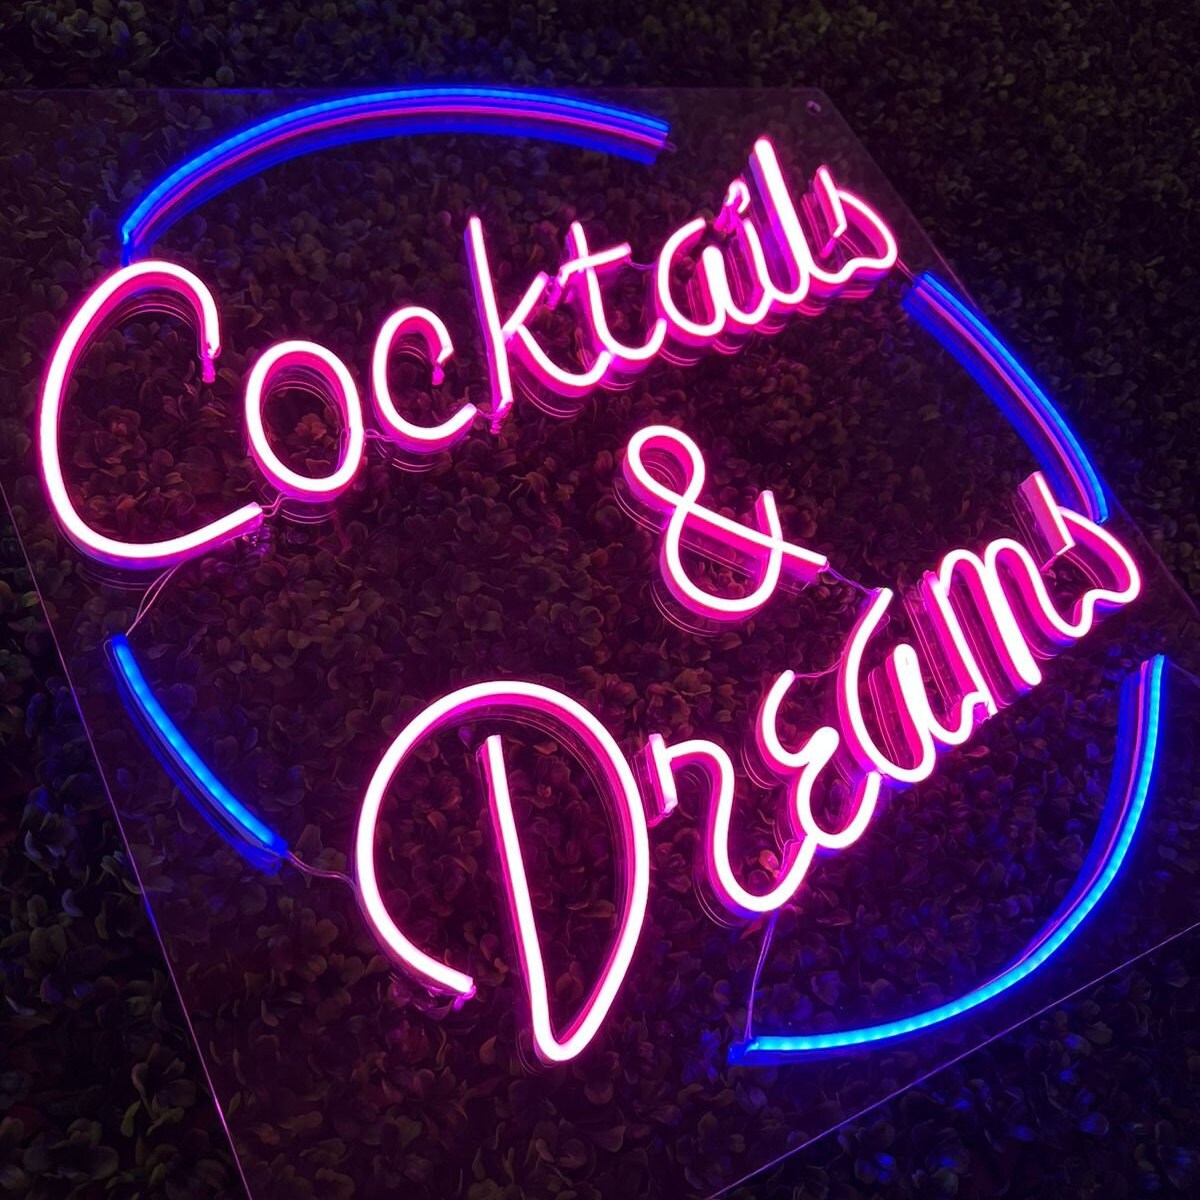 Cocktails and Dreams Cocktails and Dreams Neon Sign Custom - Etsy